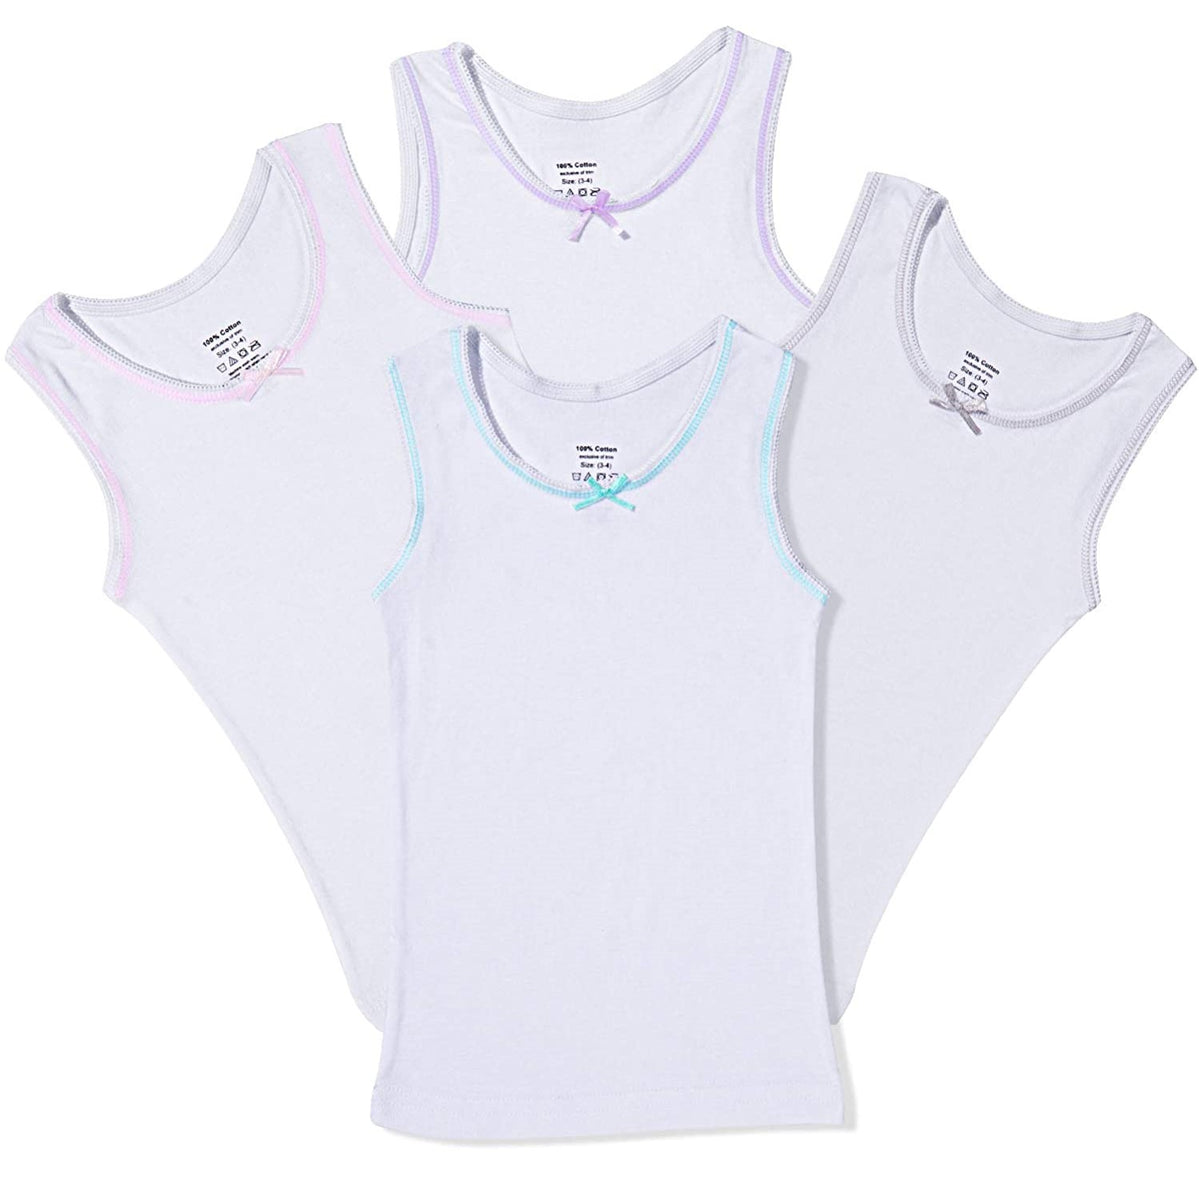 Girls White Colored Rim Undershirt 4 Pack – All Navy